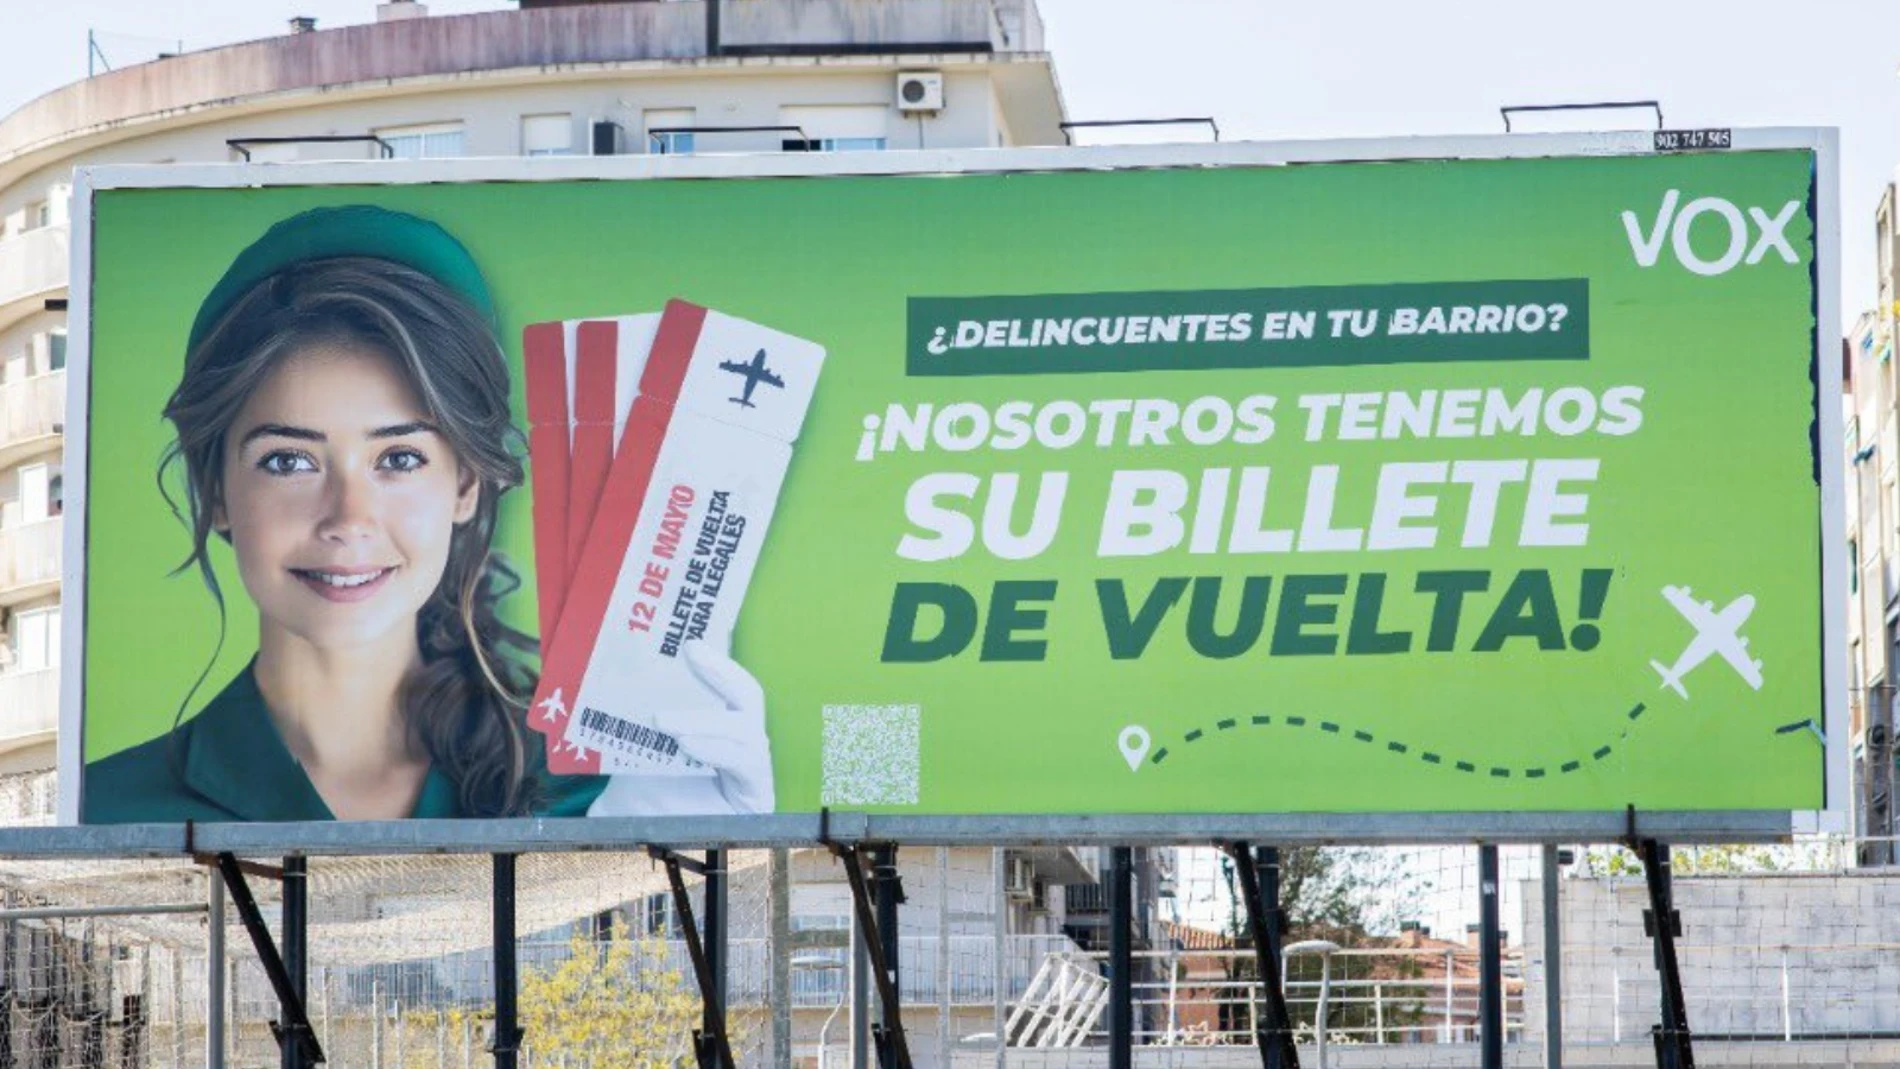 La campaña de Vox en Cataluña contra los inmigrantes ilegales